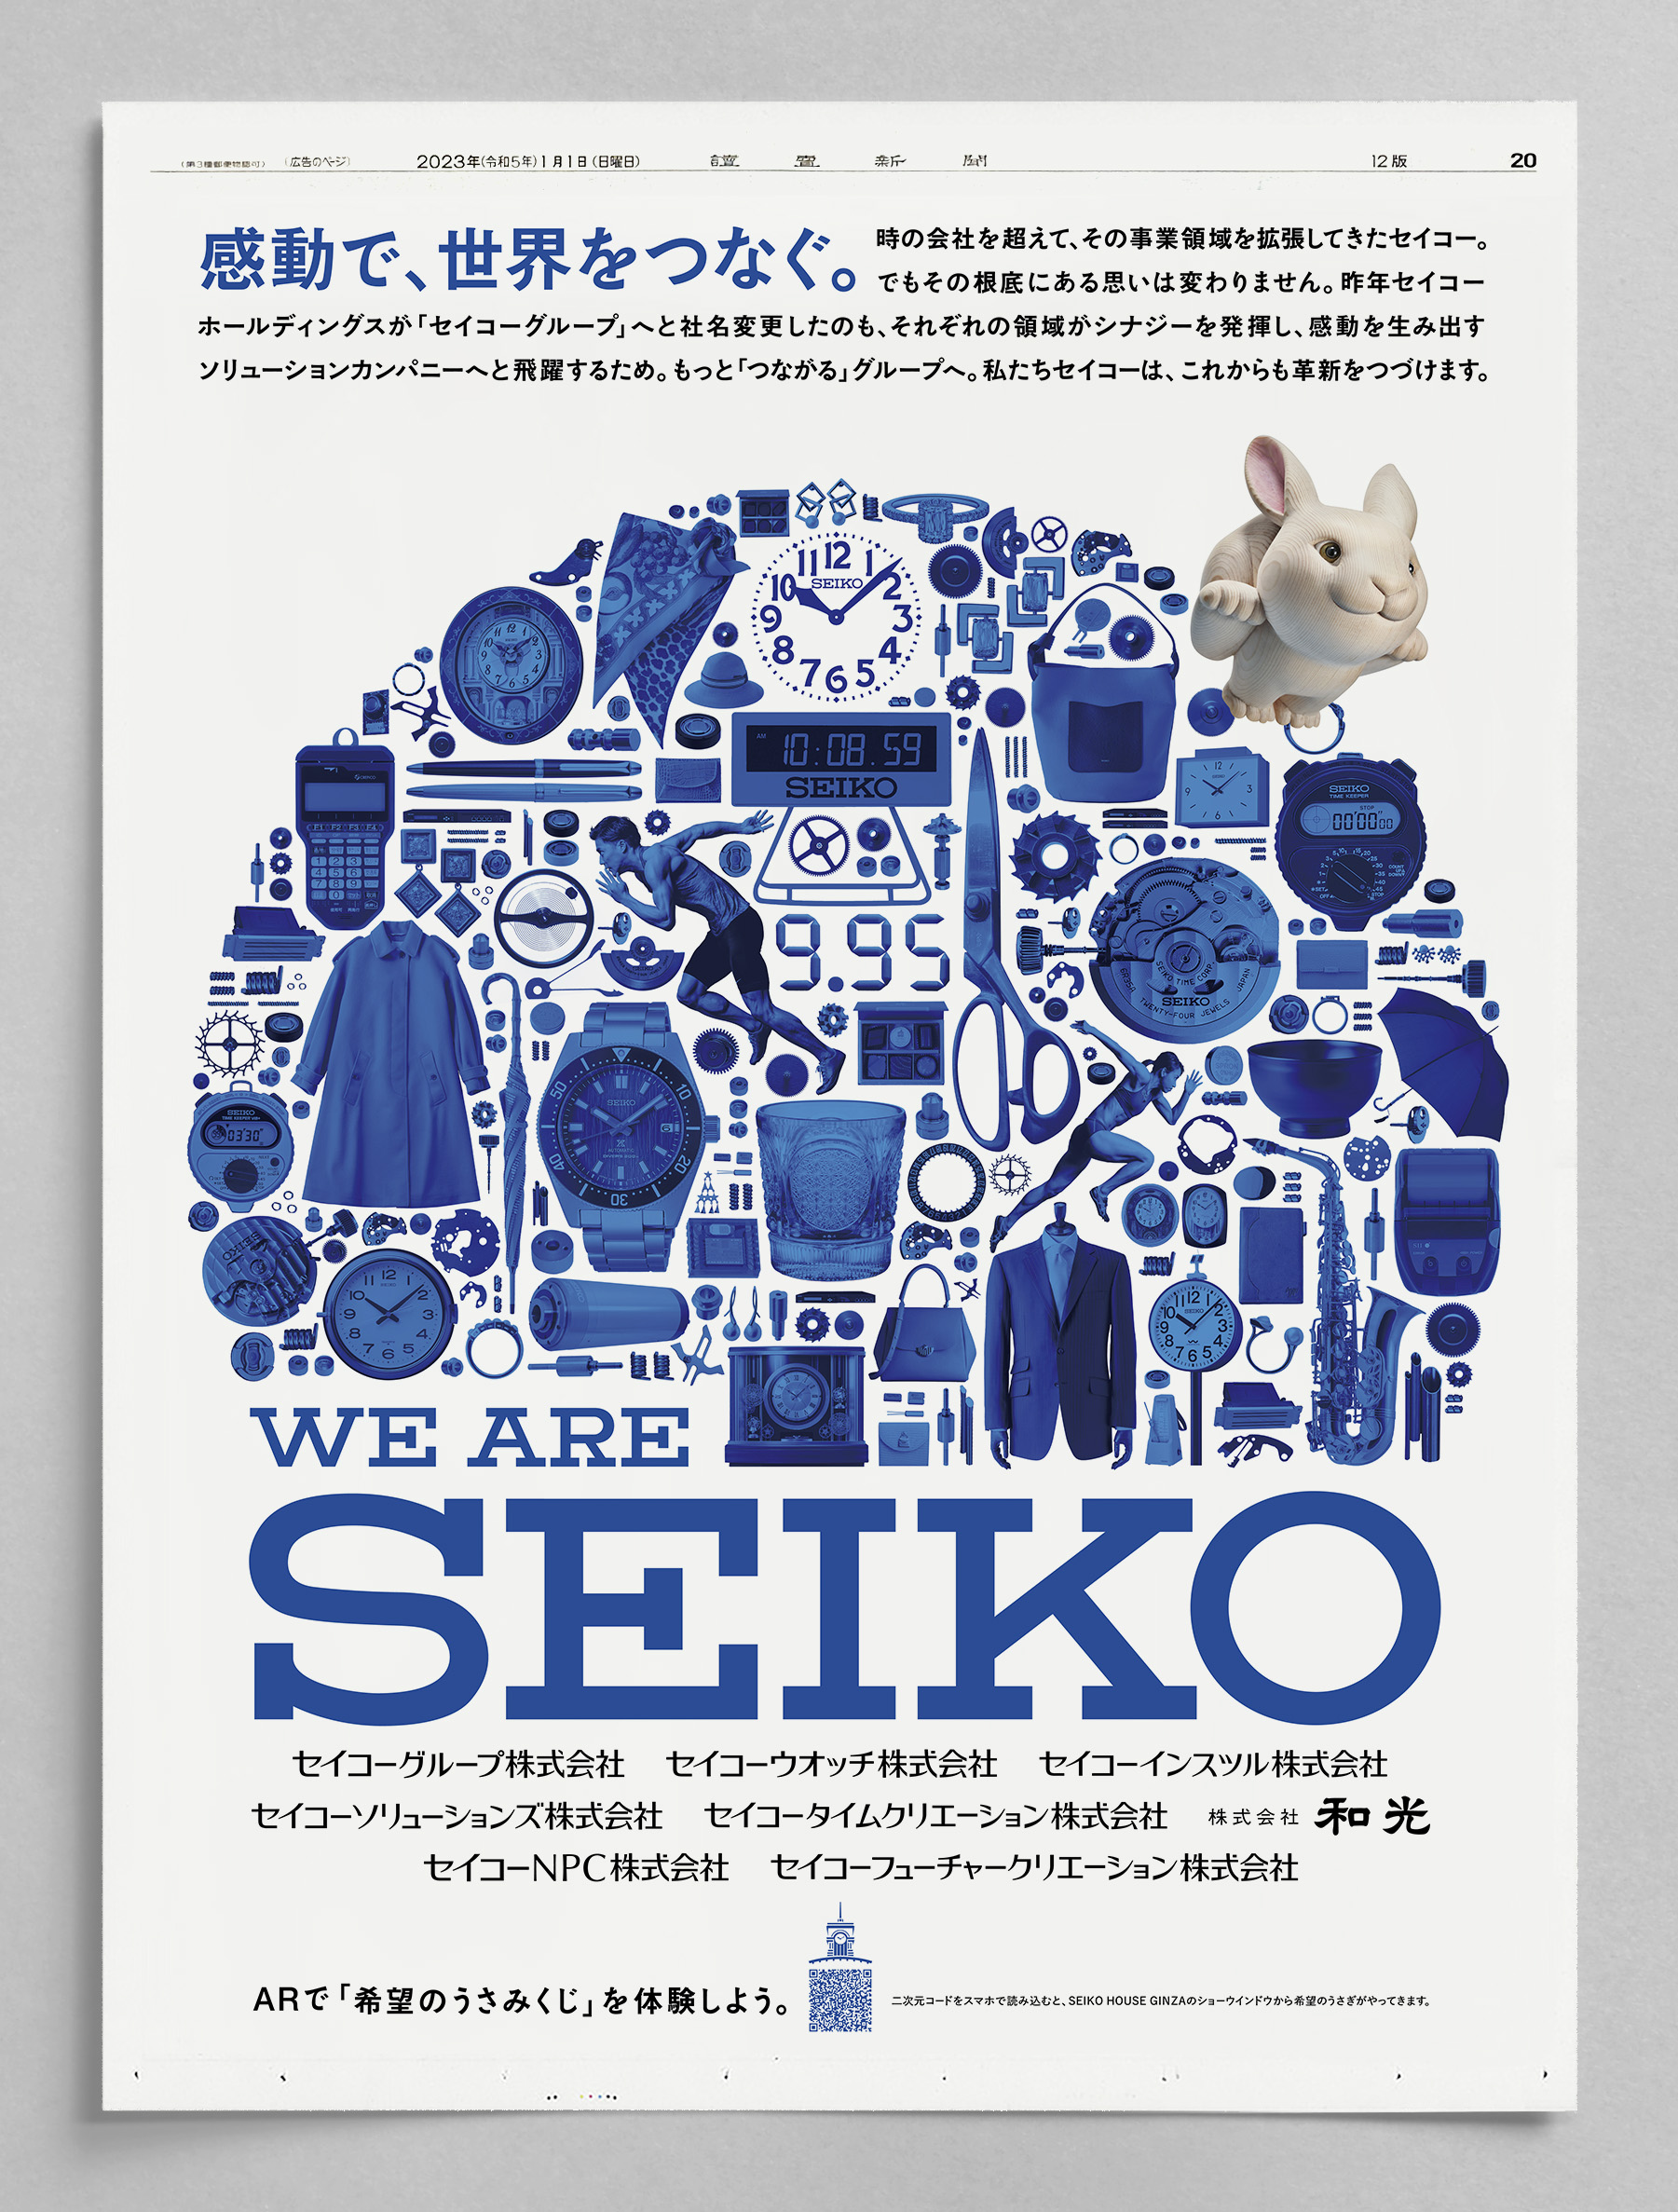 SEIKO / 2023年元旦広告 - 株式会社アドブレーン